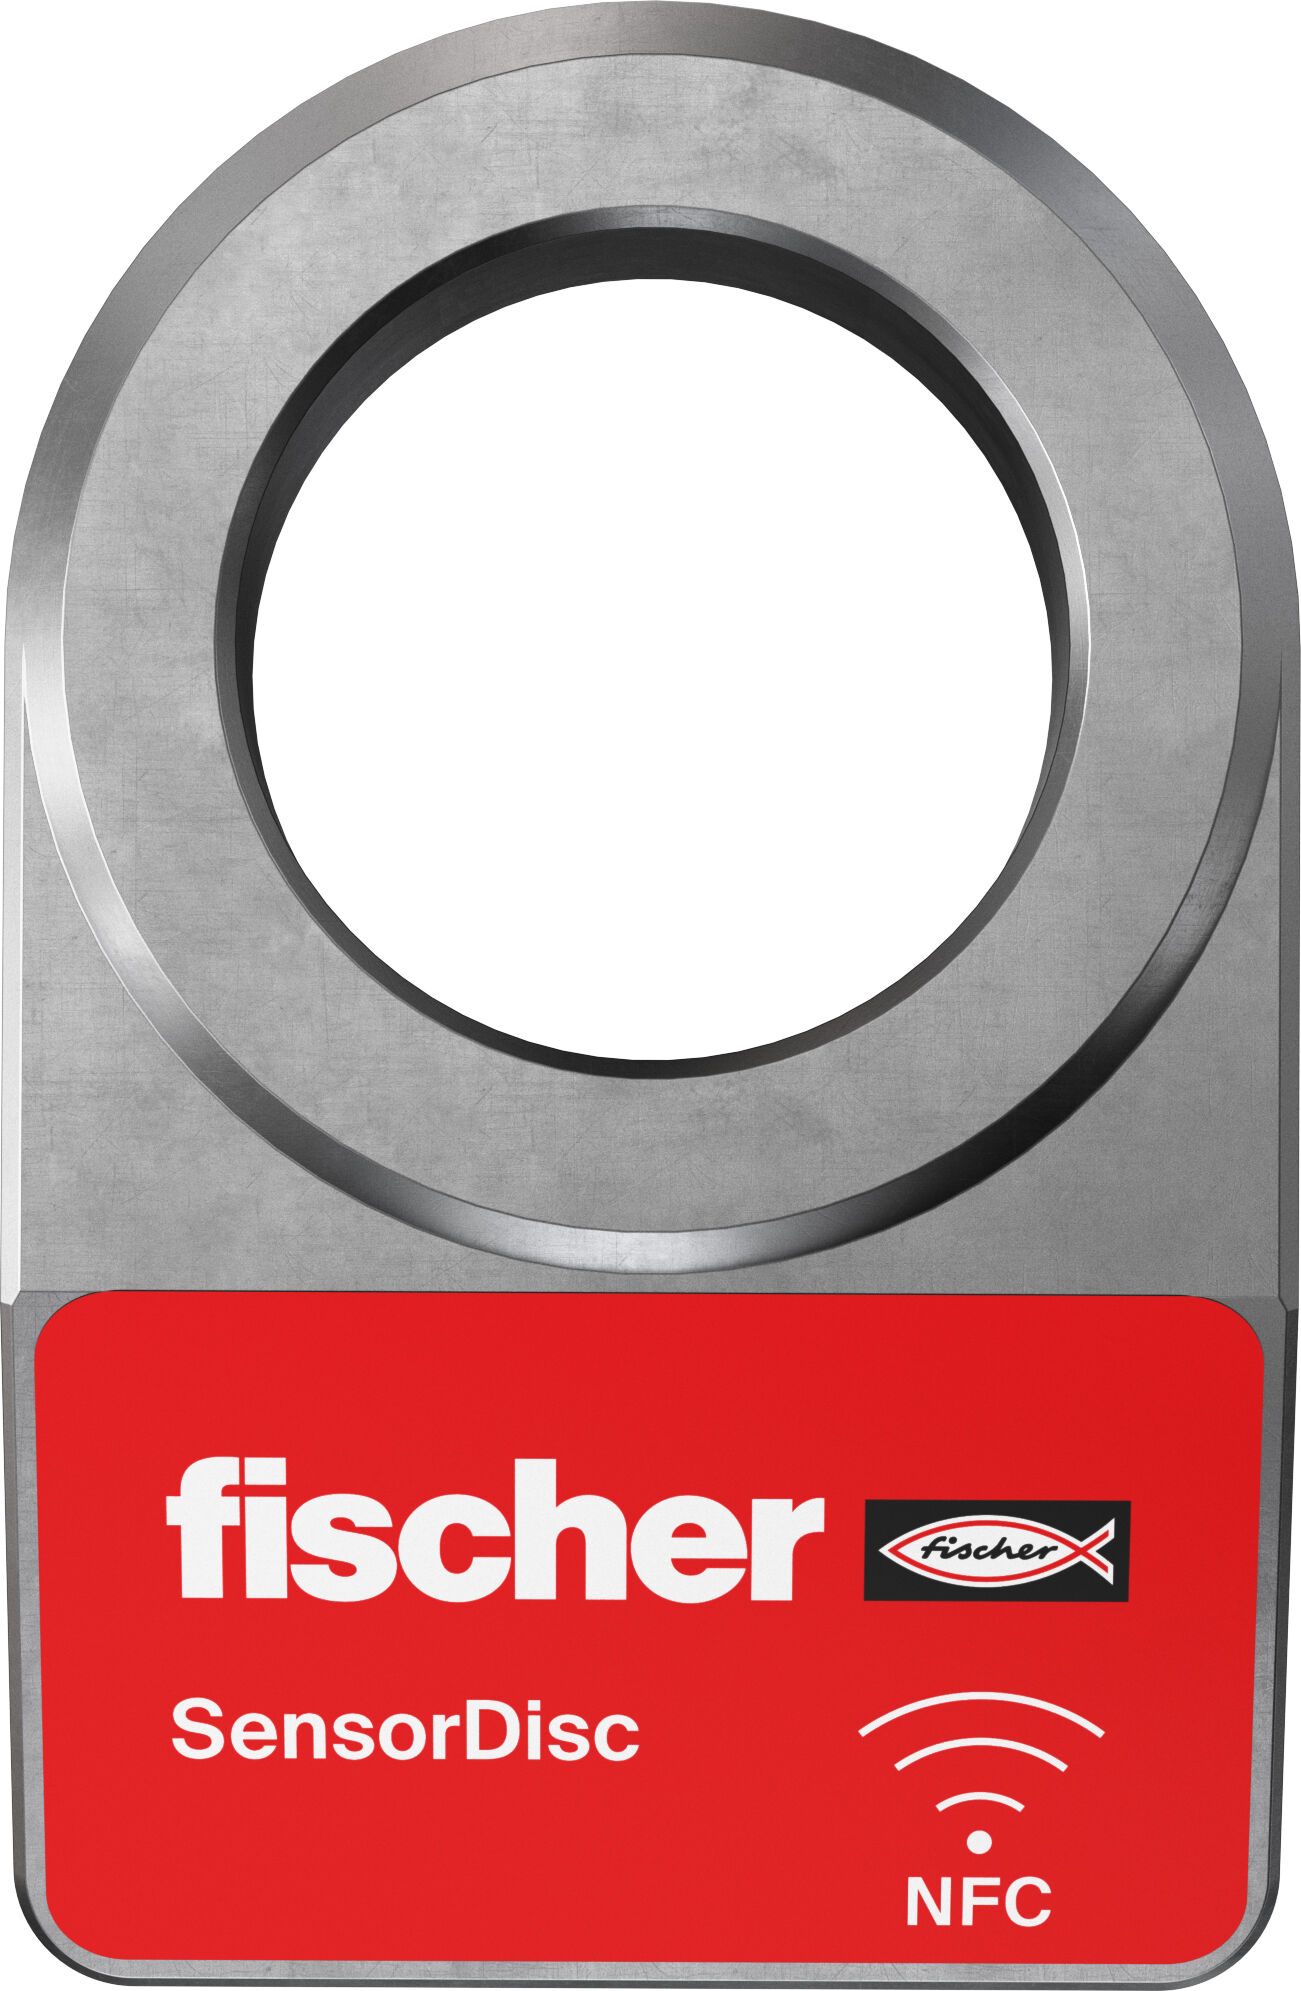 fischer Products - international